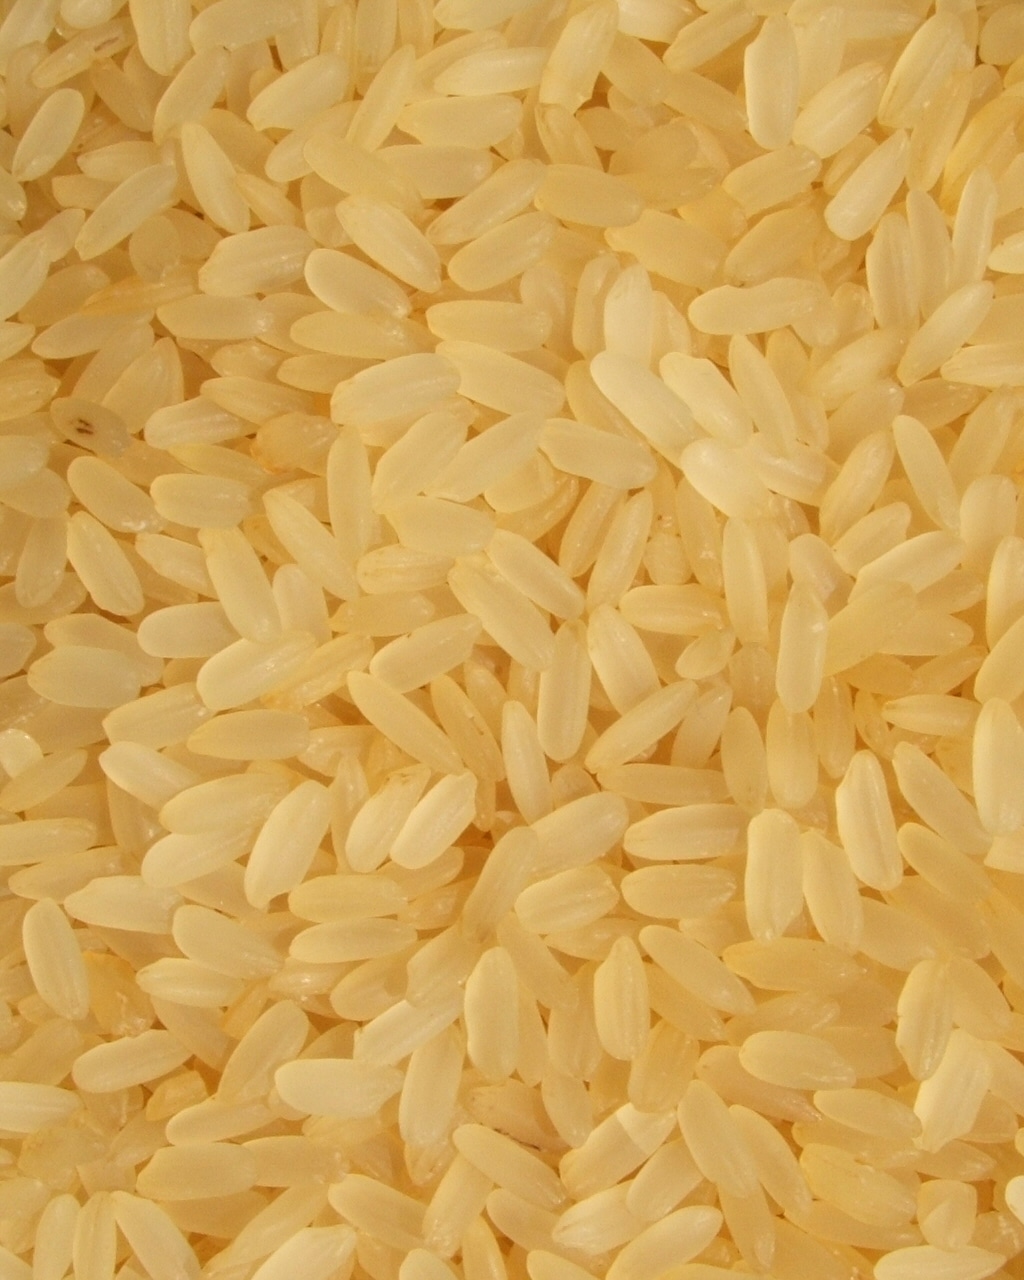 Las mejores marcas de arroz vaporizado